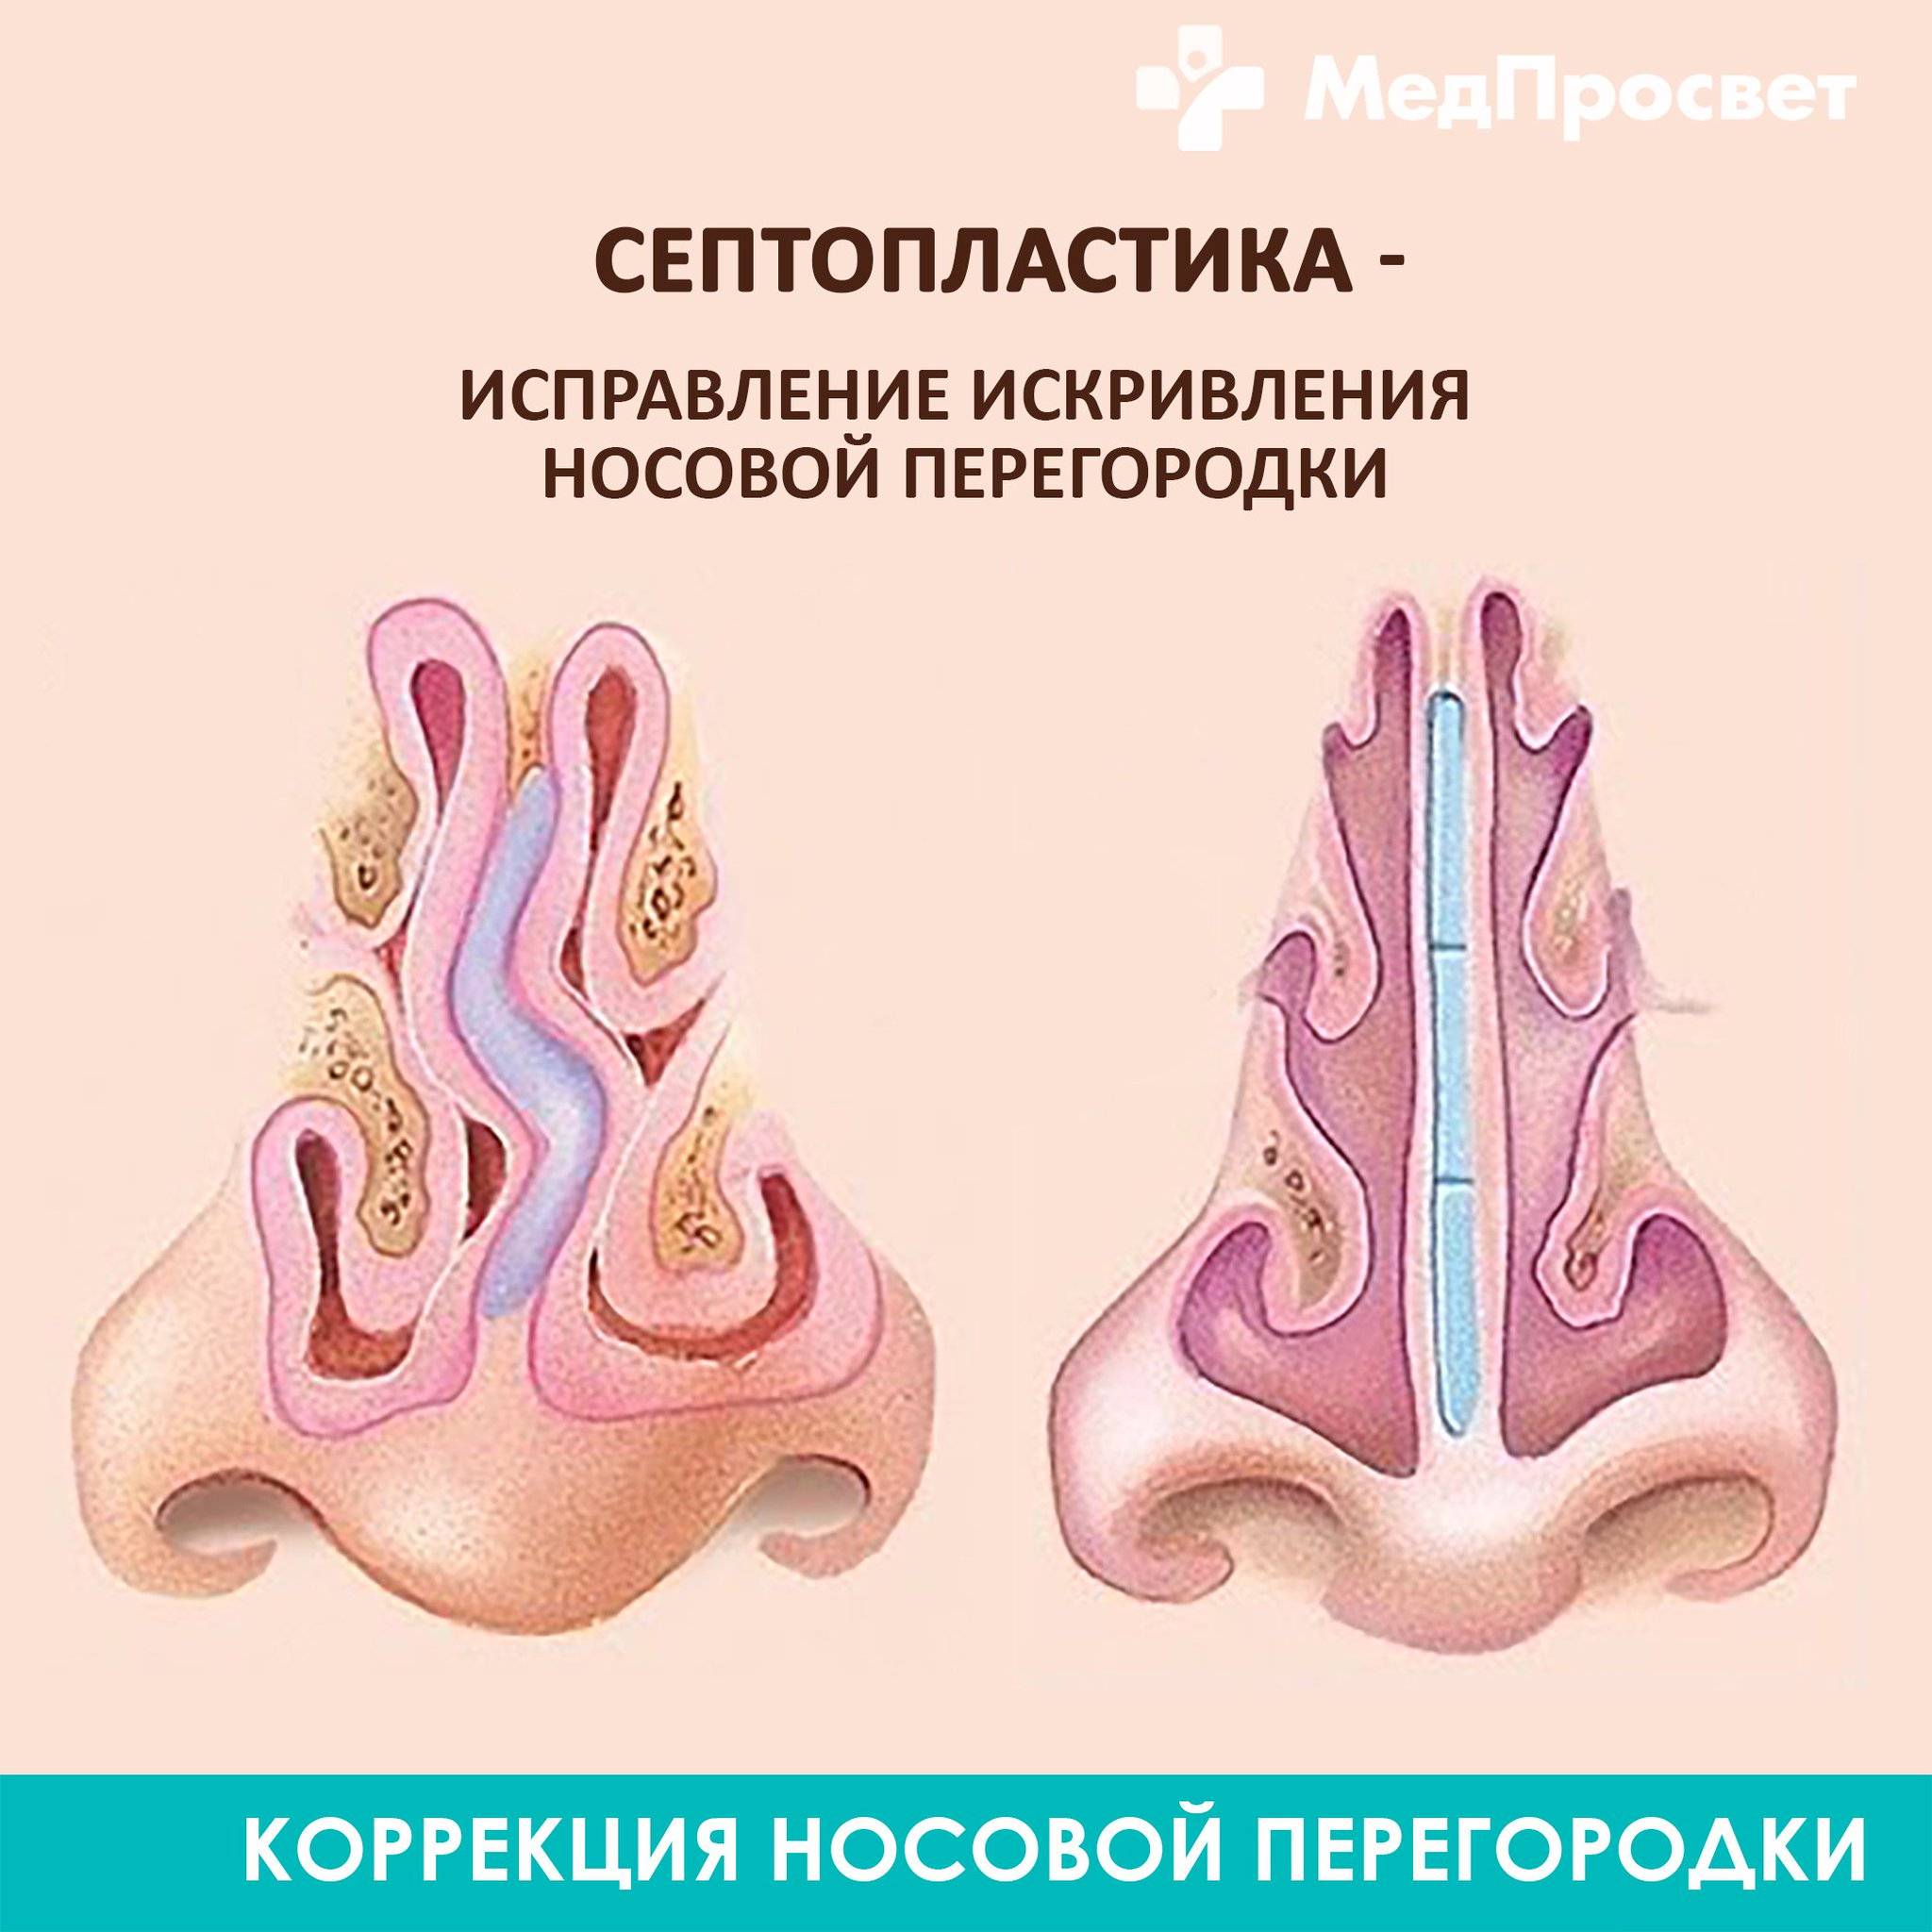 Септопластика носа — показания к операции на носовой перегородке | цэлт